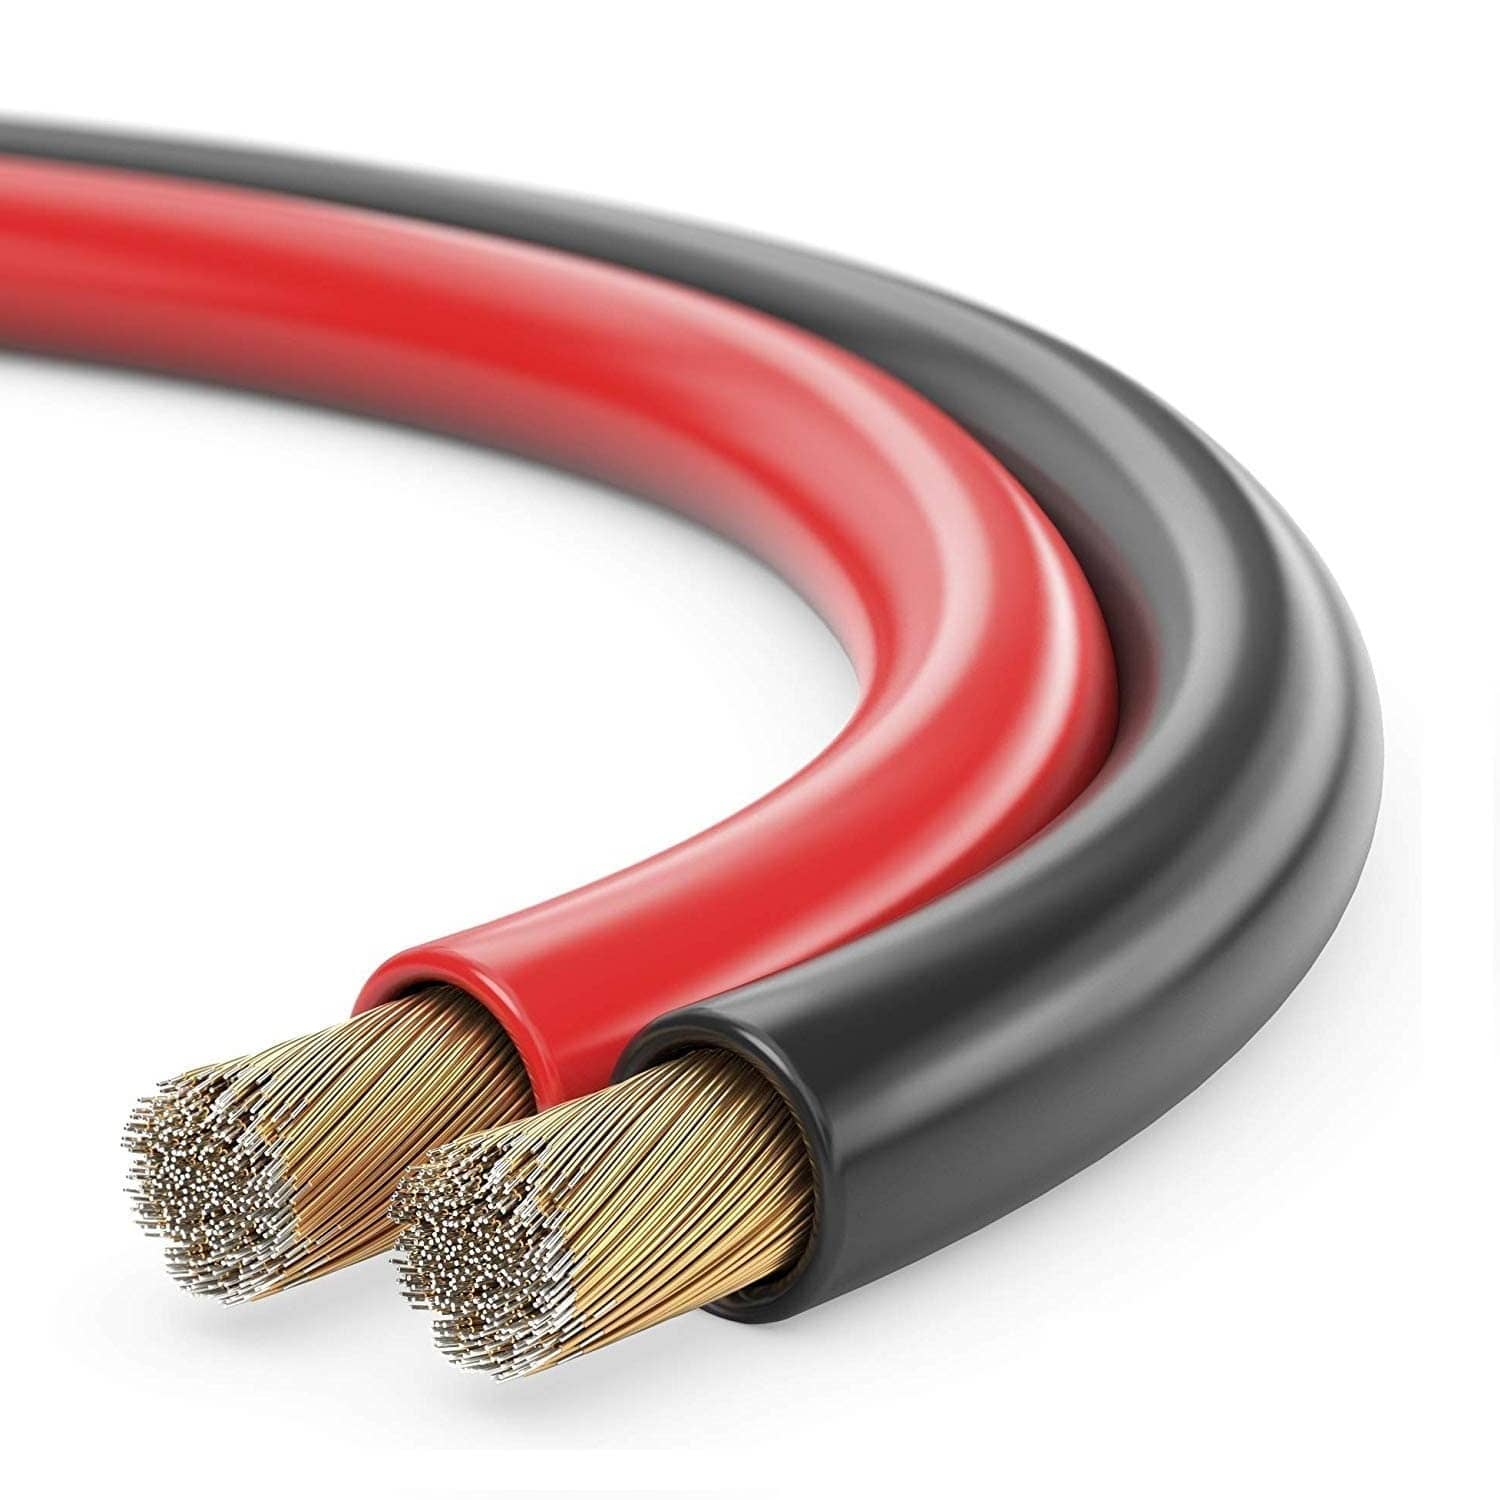 https://www.cablepelado.es/intranet/inventario/imagenes/cable-para-altavoz-2x-1.5-mm-10-m-rojo-negro.jpg